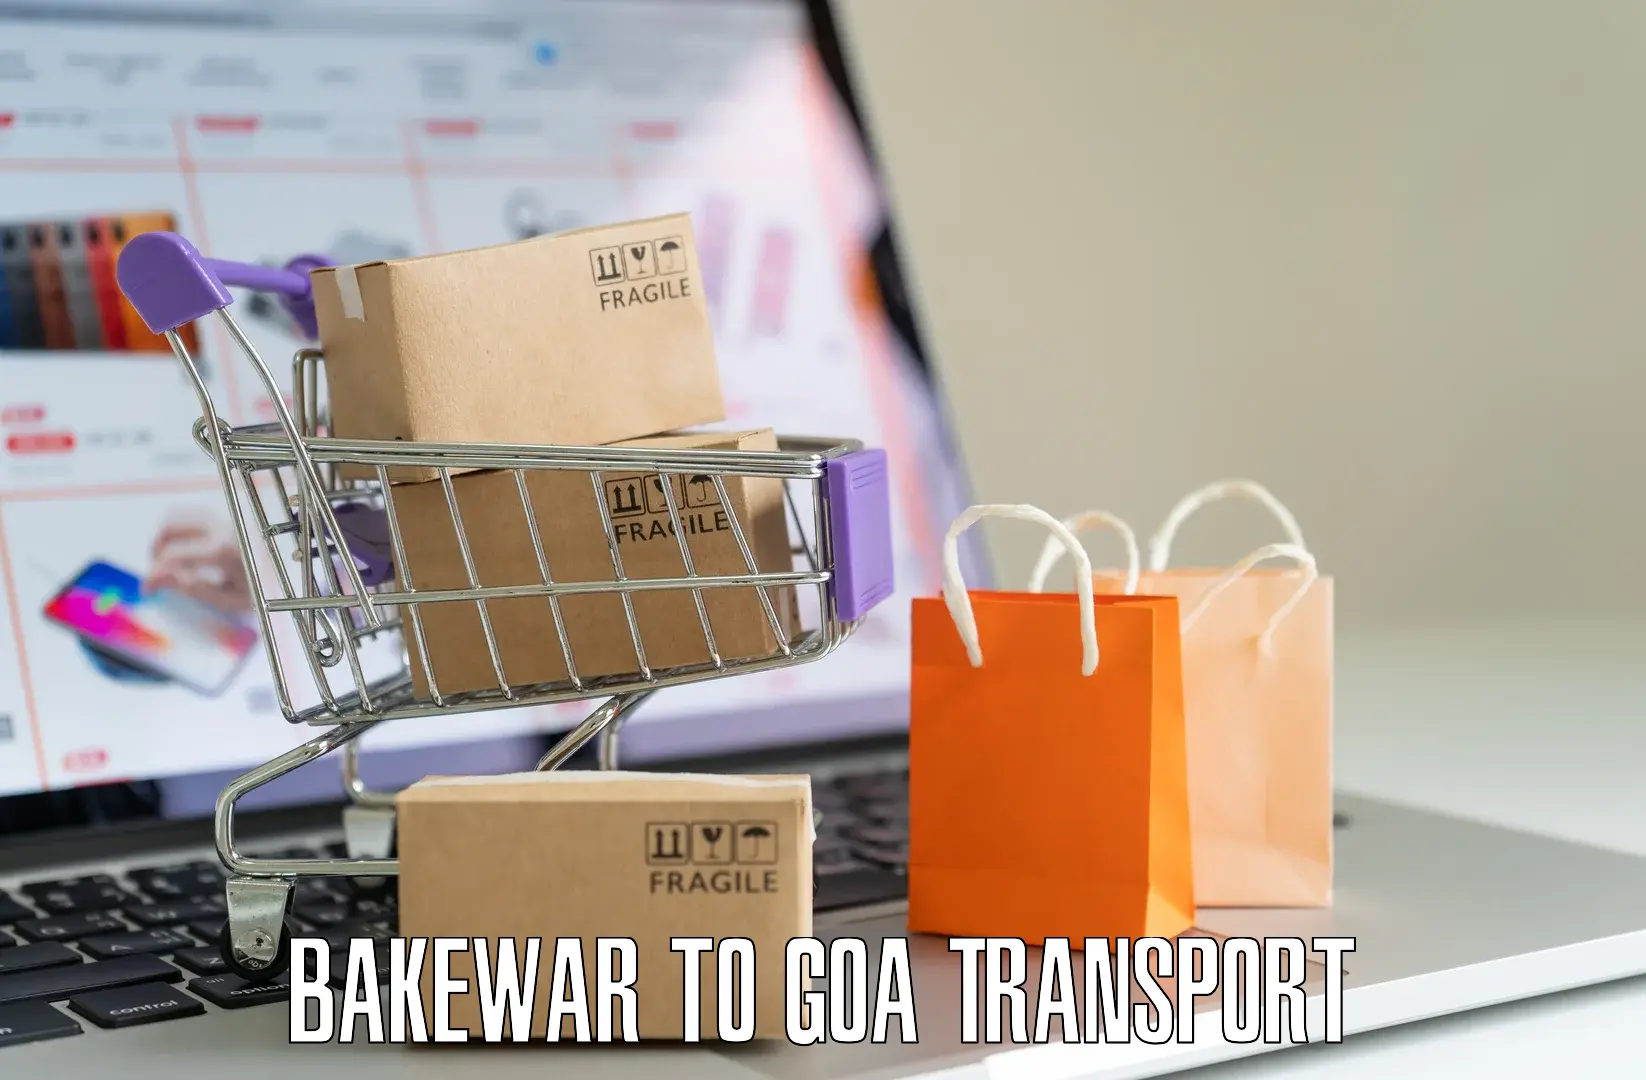 Nearest transport service Bakewar to South Goa